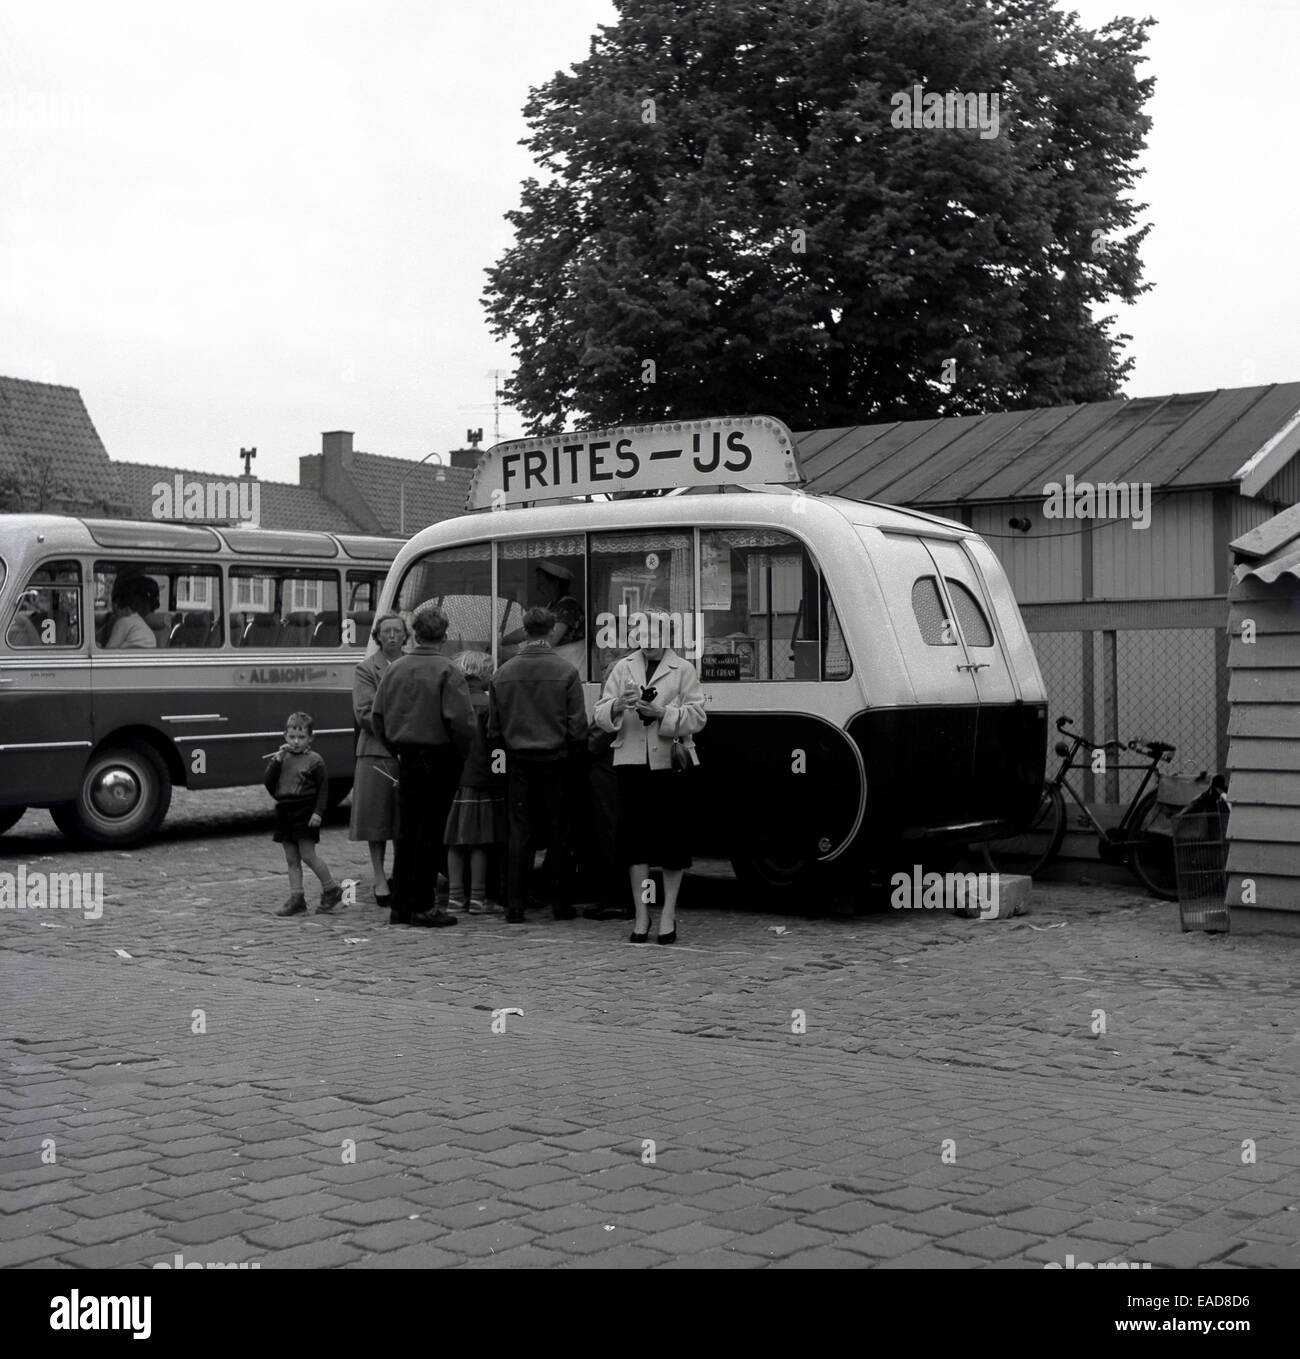 Anni sessanta foto storiche che mostra le persone al di fuori di stile continentale "cancelleria frites' kiosk o van con i clienti, Belgio. Foto Stock